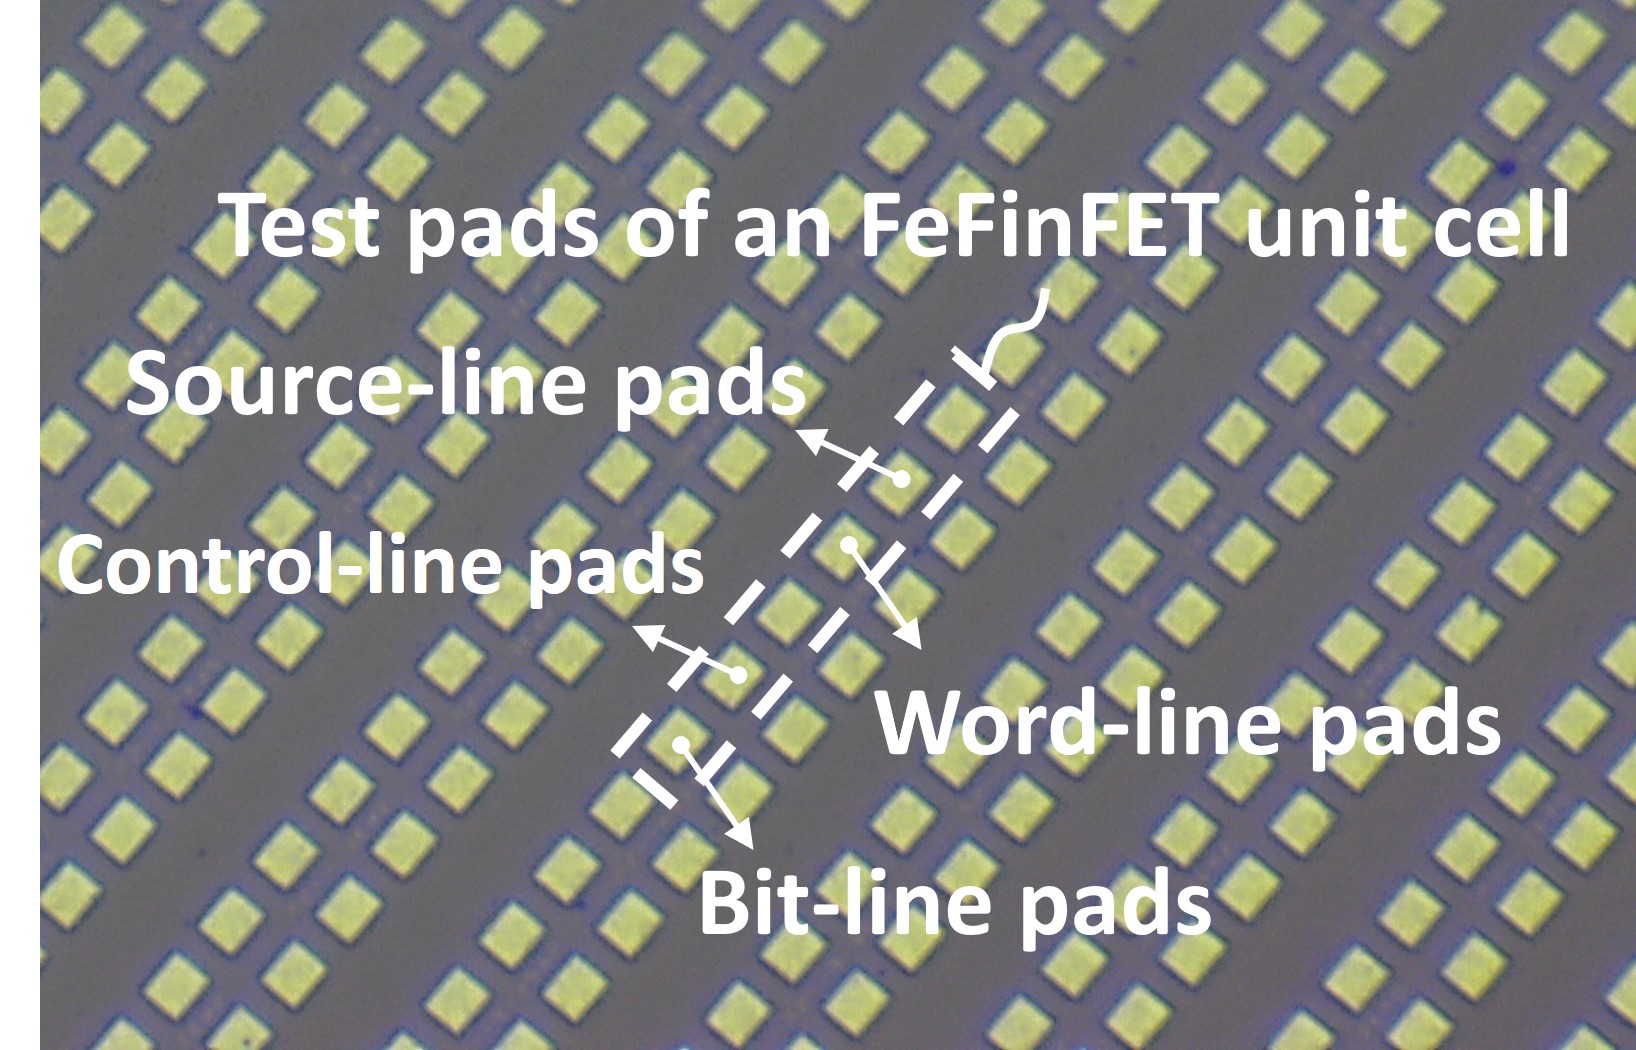 新型FeFinFET NVM陣列測試矩陣，由一千個FeFinFET NVM記憶體元件構建成，其中為了測量單顆元件的特性，俱備了Bit-line (位元線), Word-line (字元線), Control-line (控制線), Source-line (源極線), 等 金屬探針墊 (pad)，利用量測記錄記憶體各向電性特性與操作表現。電機系提供。